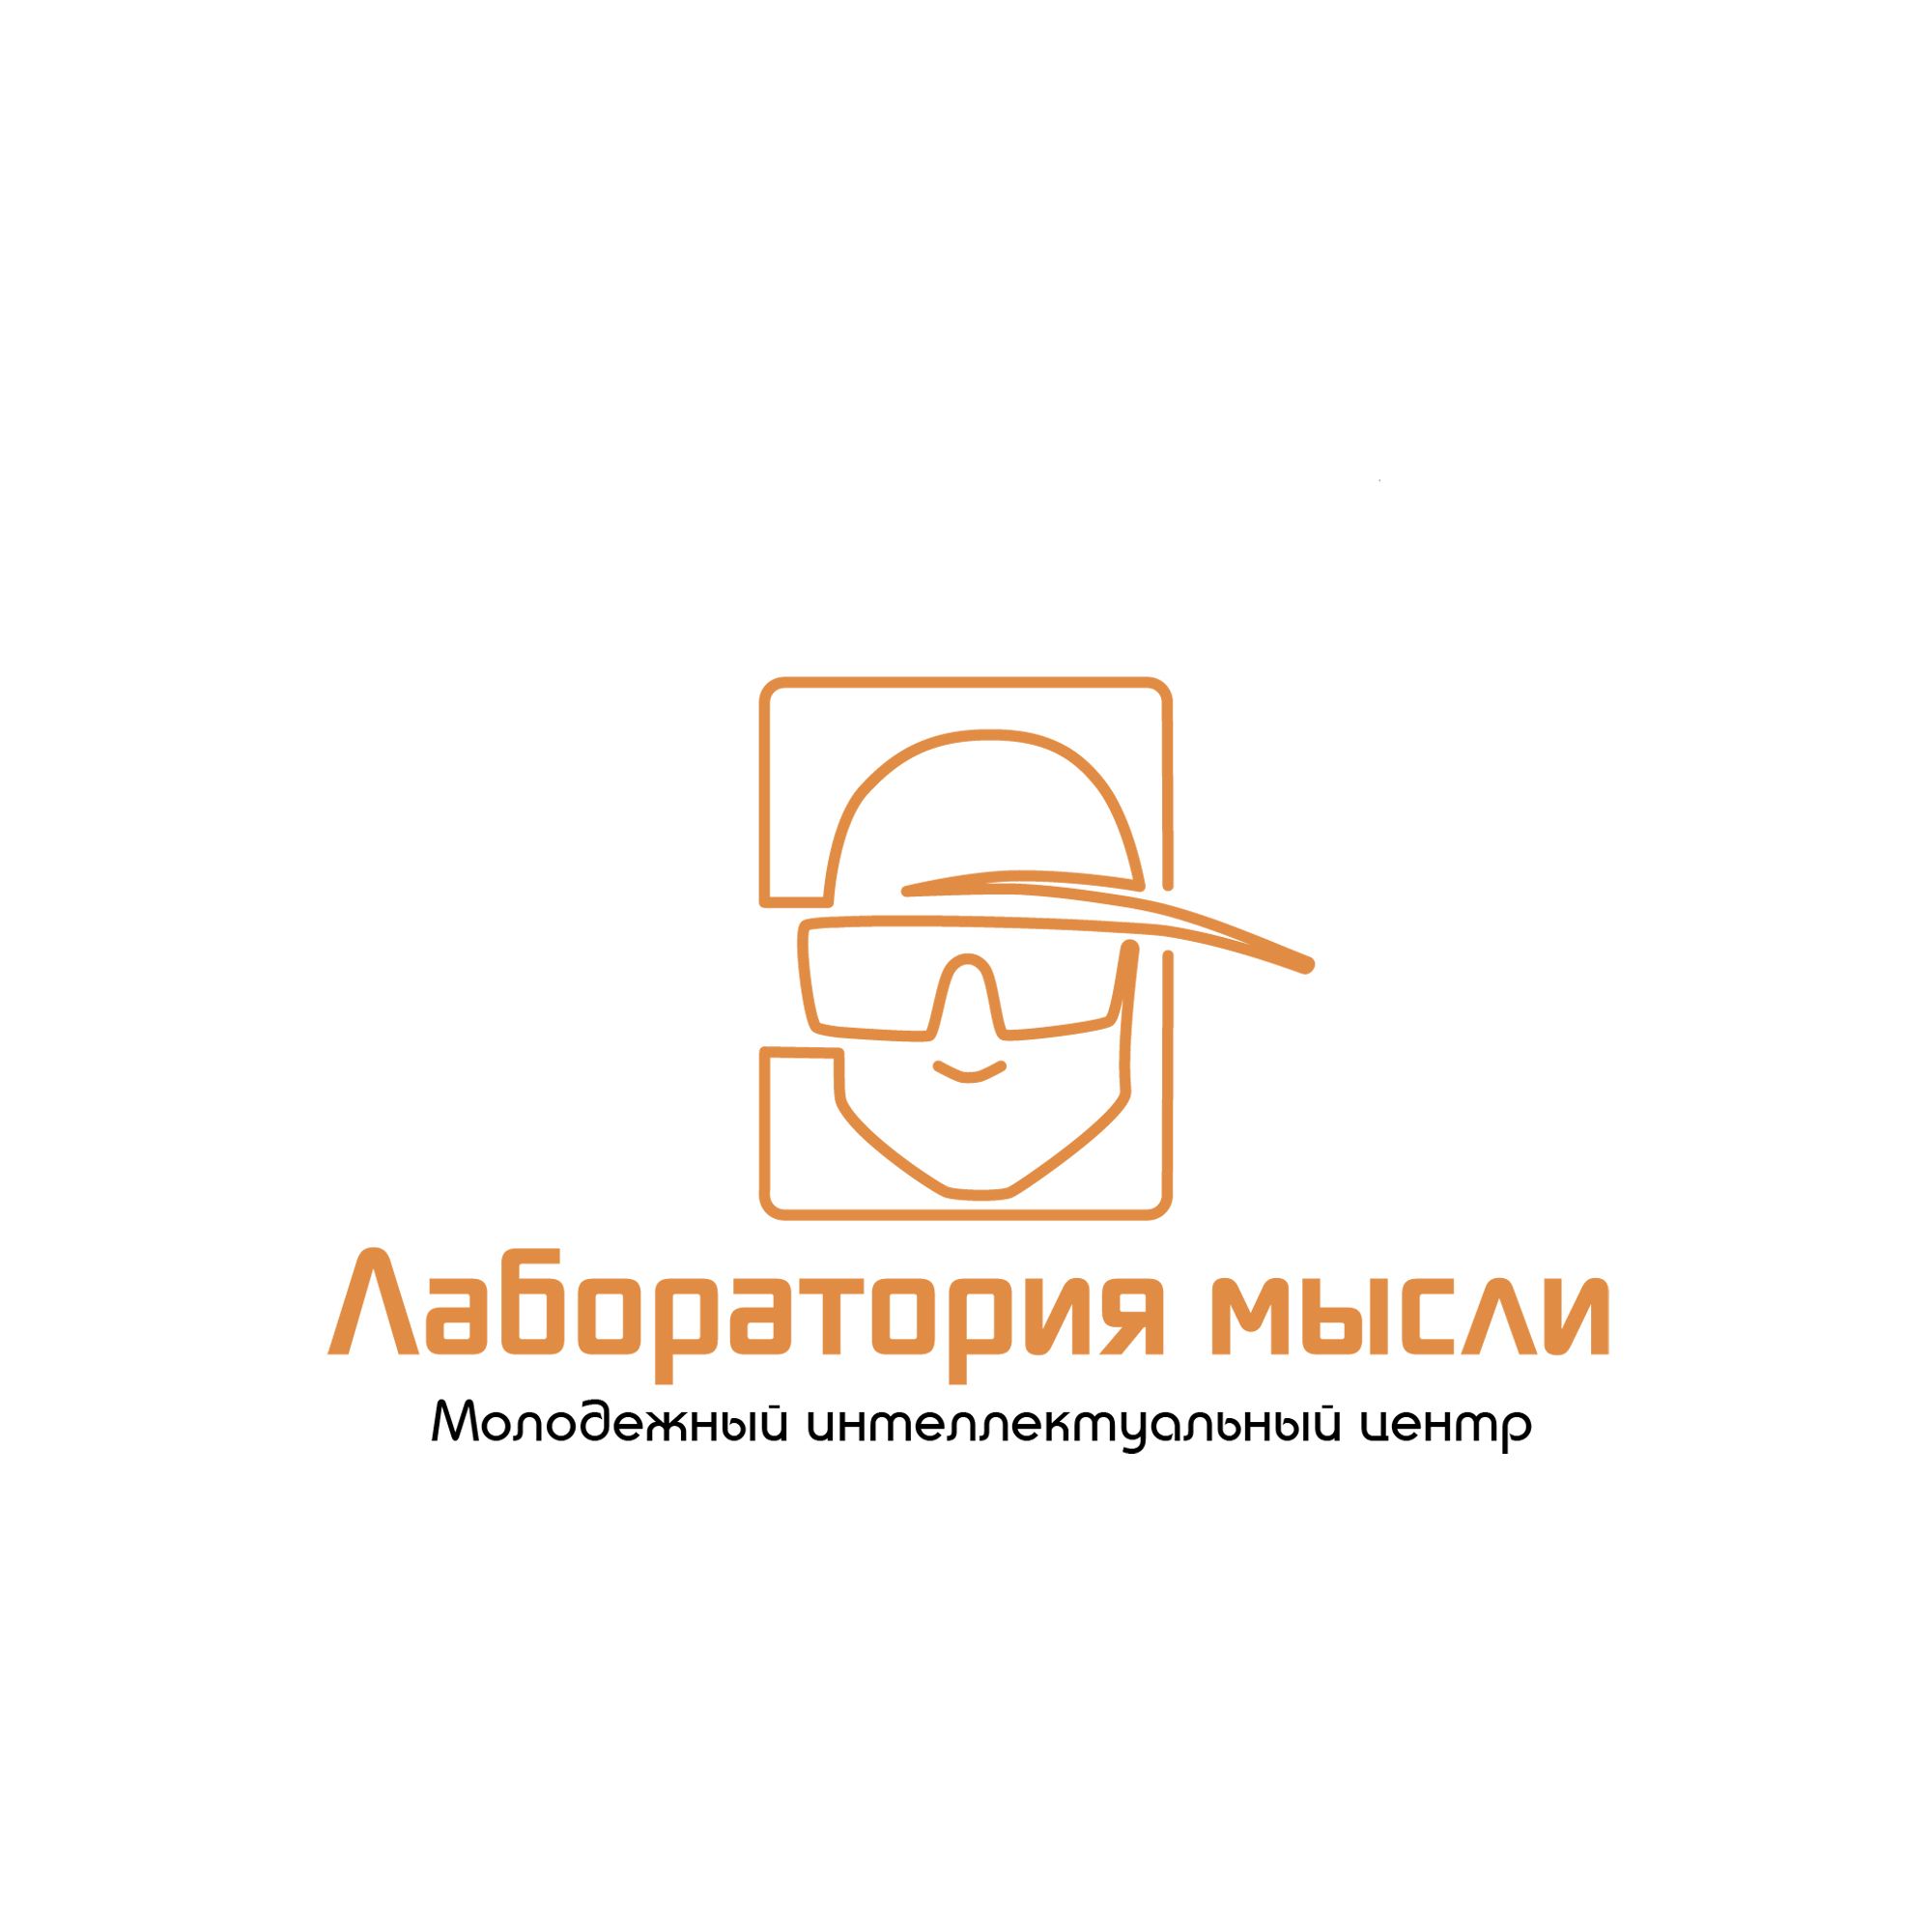 Мыслелаб! Логотип для интеллектуального центра - дизайнер atmannn